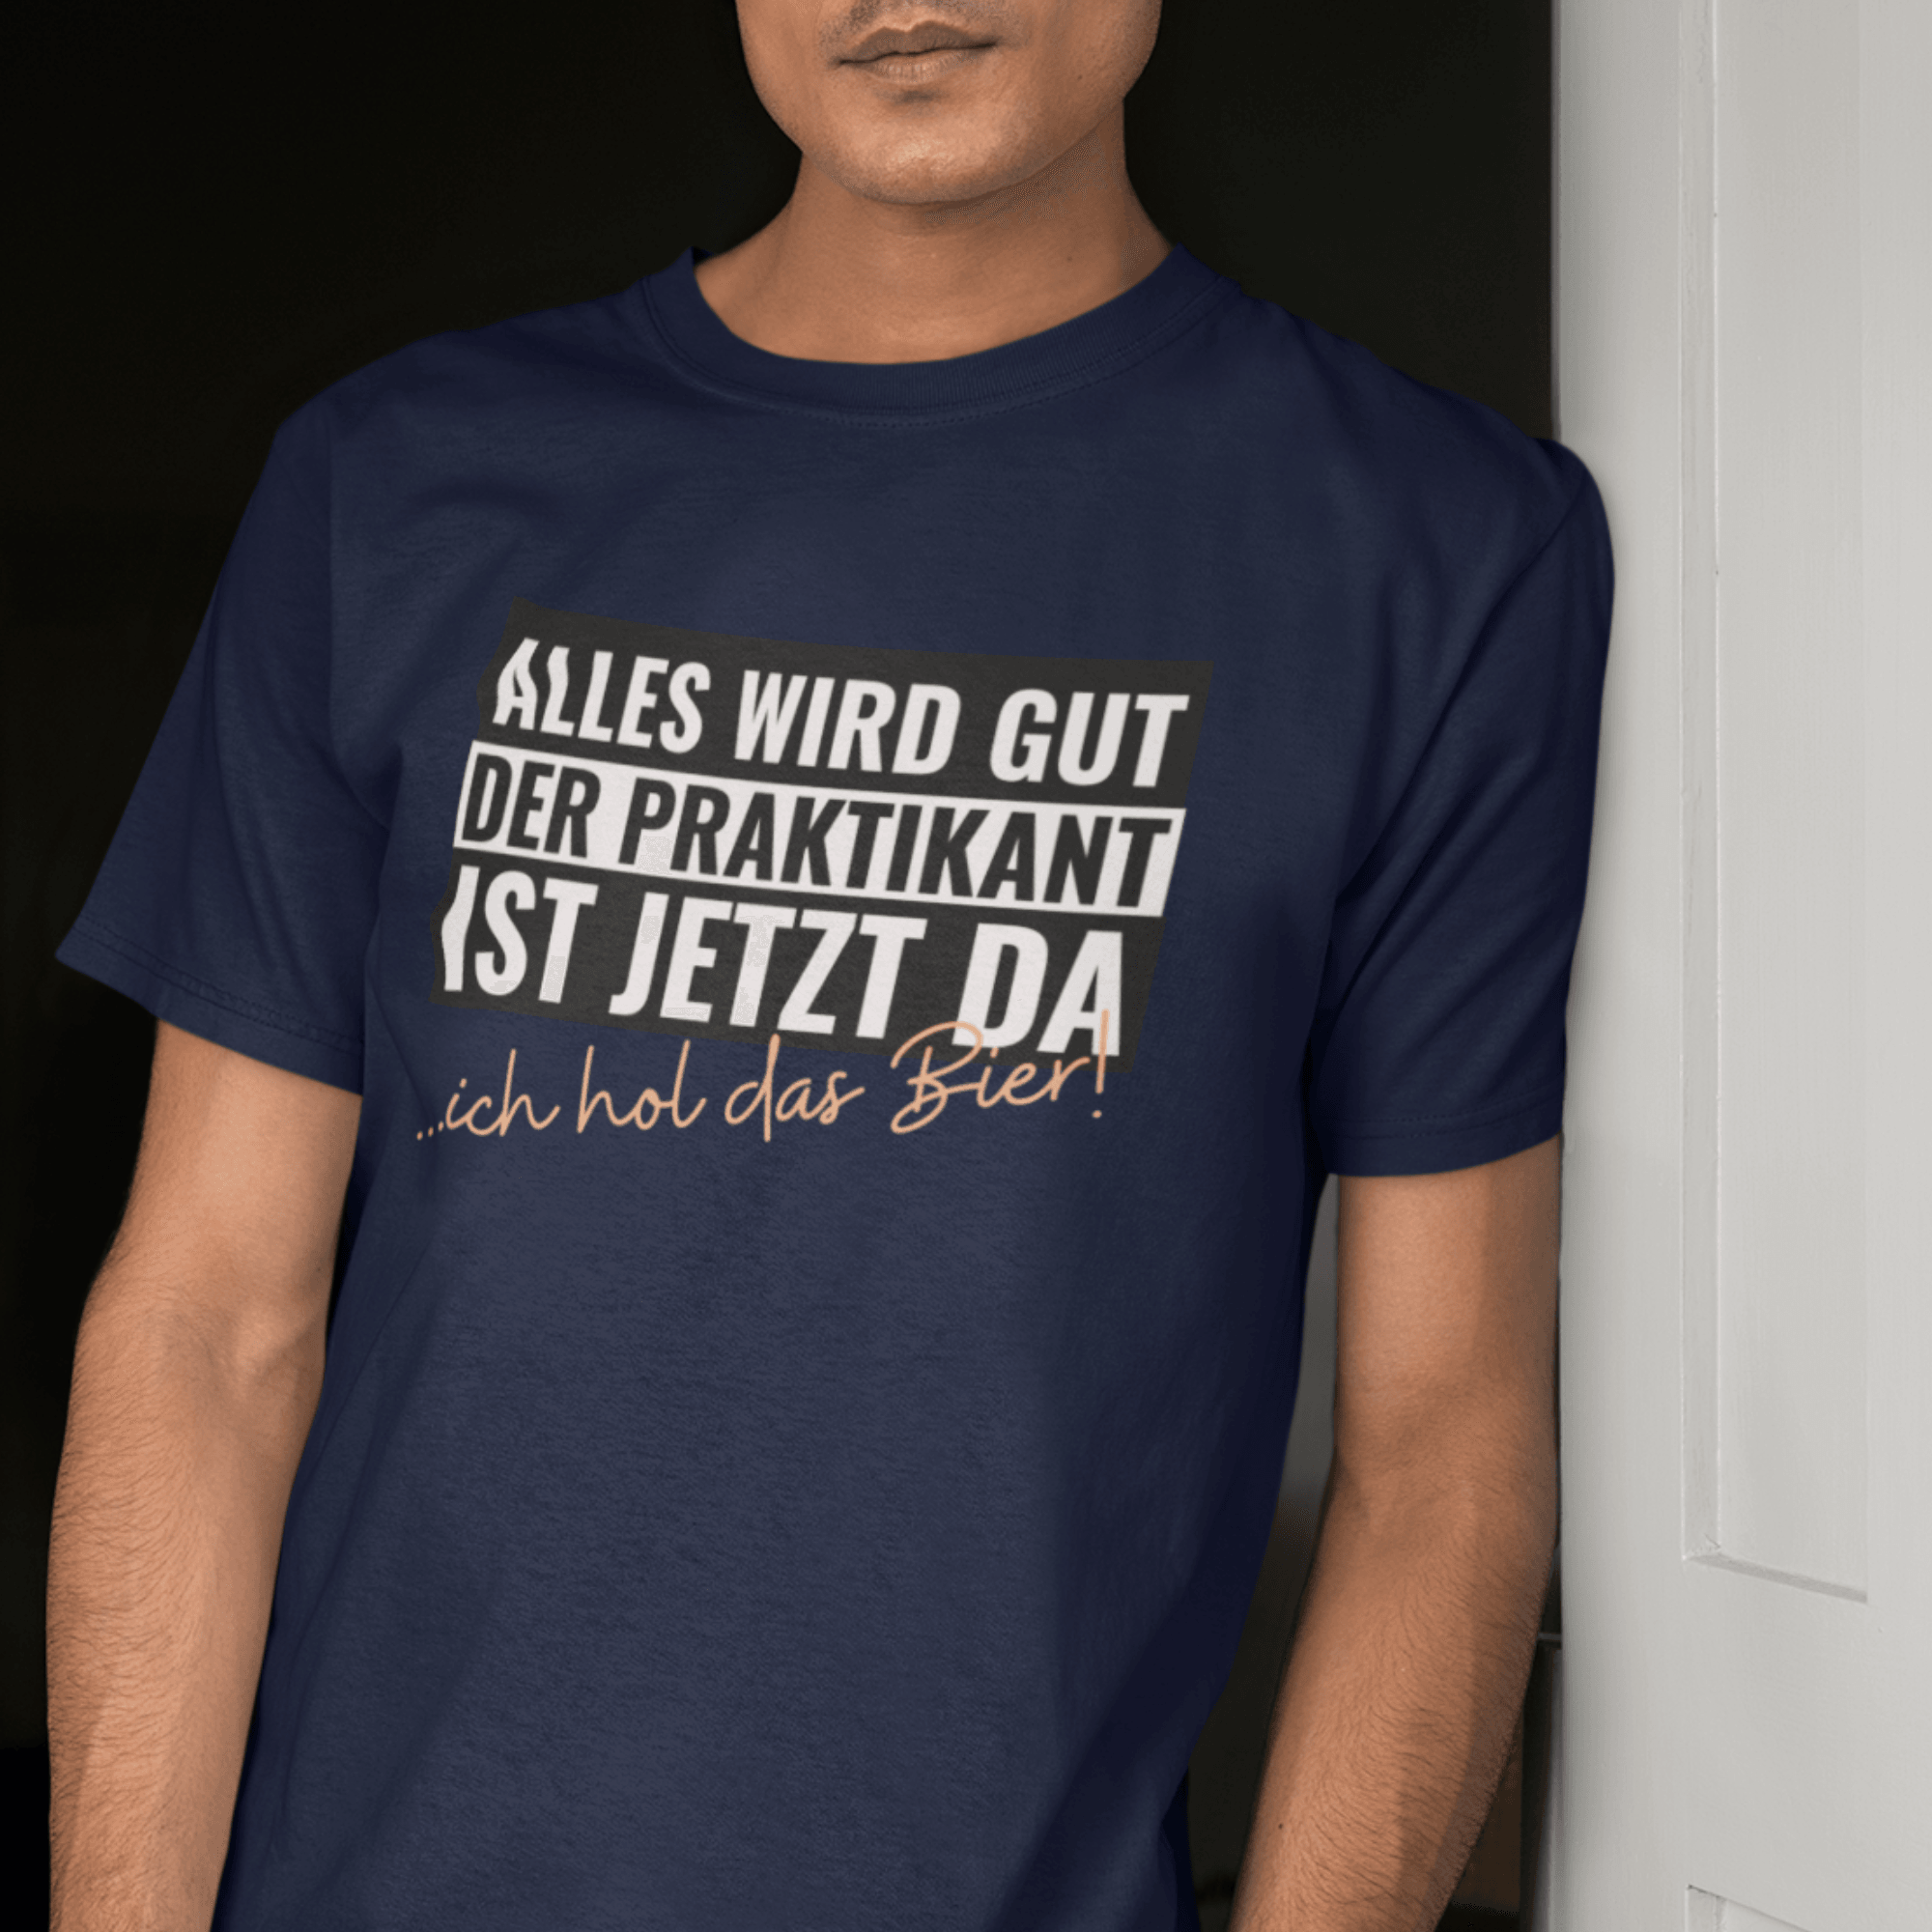 DER PRAKTIKANT - Herren Shirt - einschenken24.de